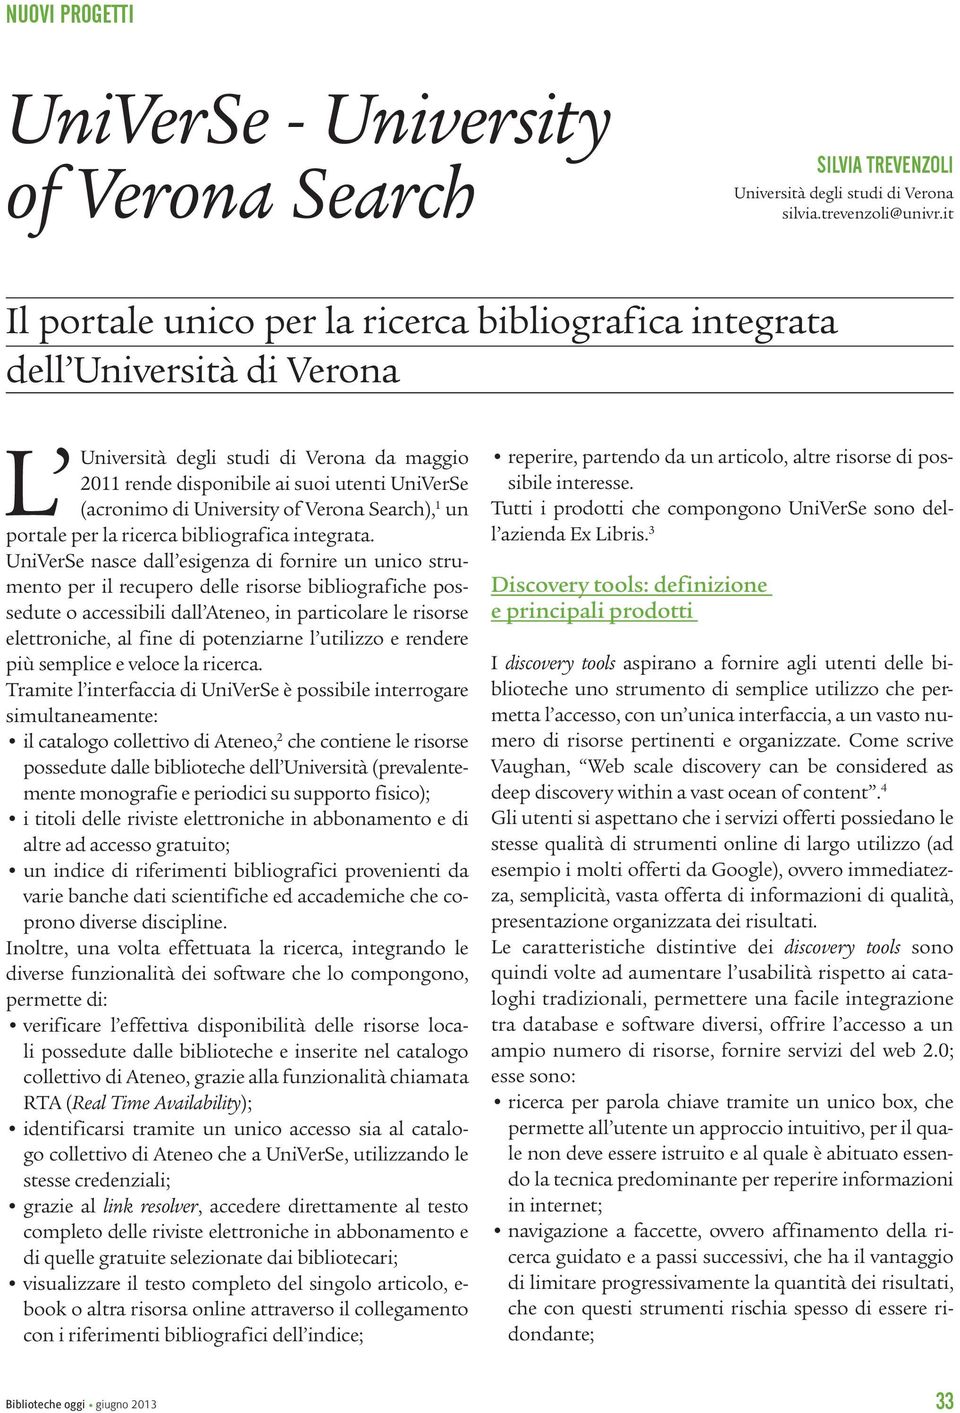 University of Verona Search), 1 un portale per la ricerca bibliografica integrata.